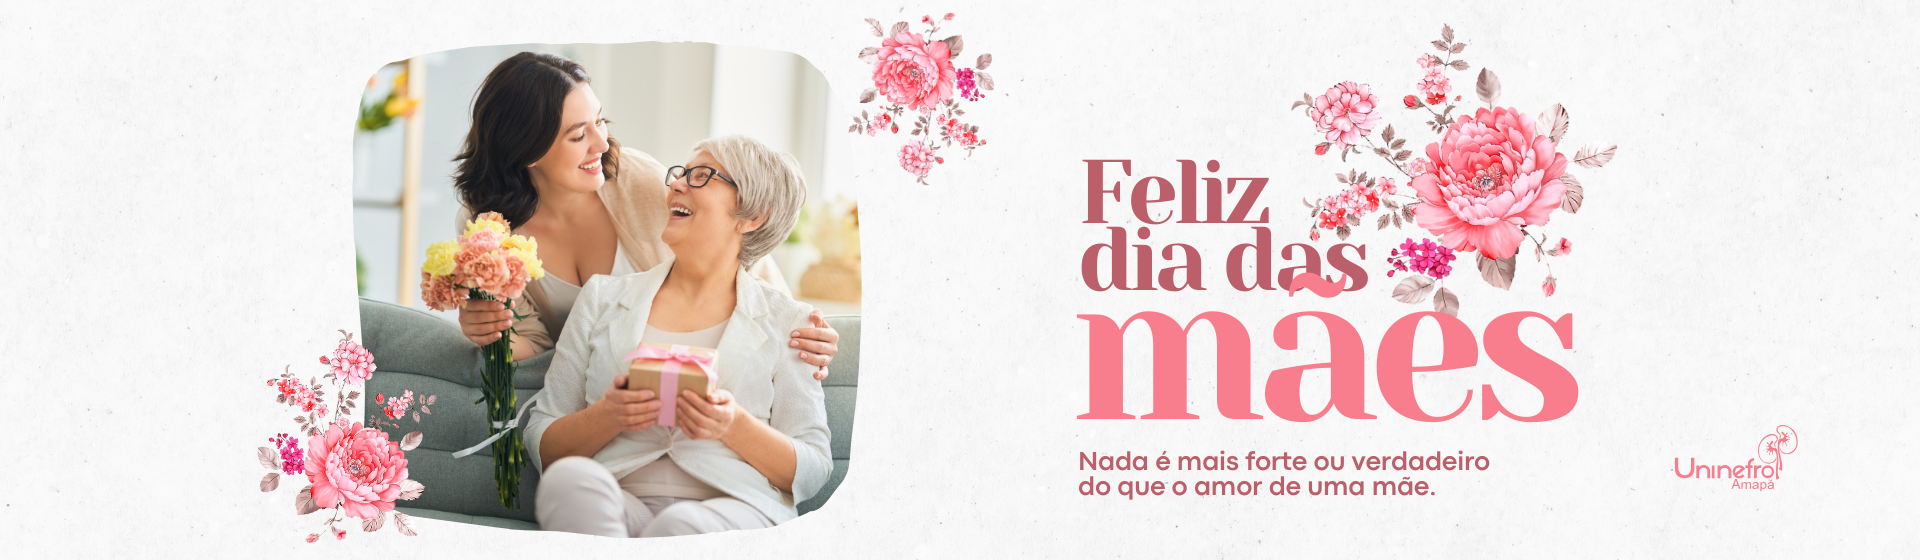 Caneca panorâmica feliz dia das mães floral em rosa e vermelho (2)